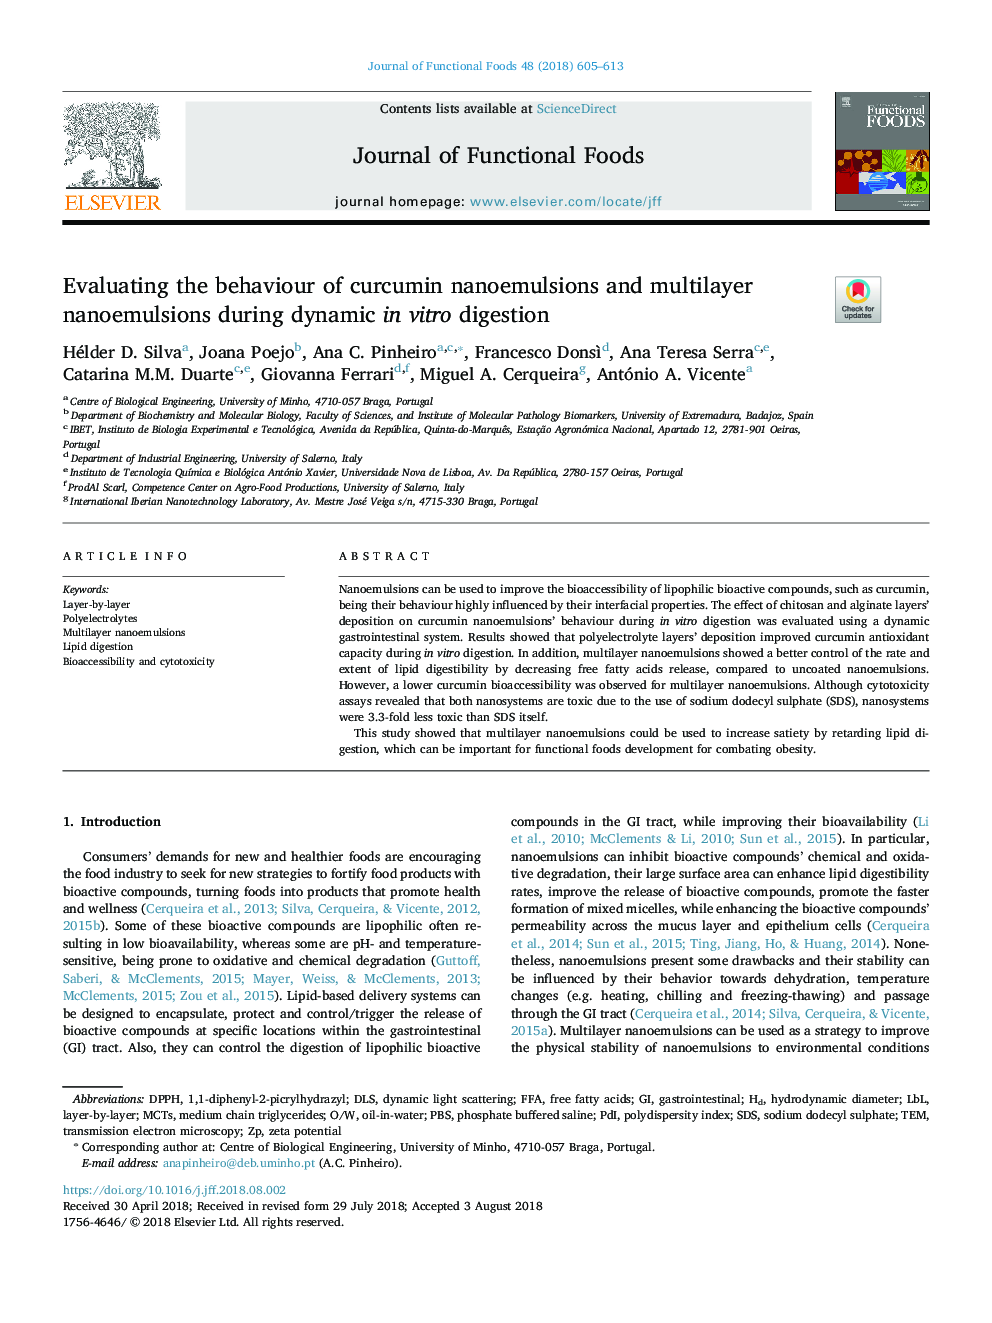 ارزیابی رفتار نانو امولسیون های کورکومین و نانو امولسیون های چند لایه در طول هضم پلاسمایی در شرایط آزمایشگاهی 